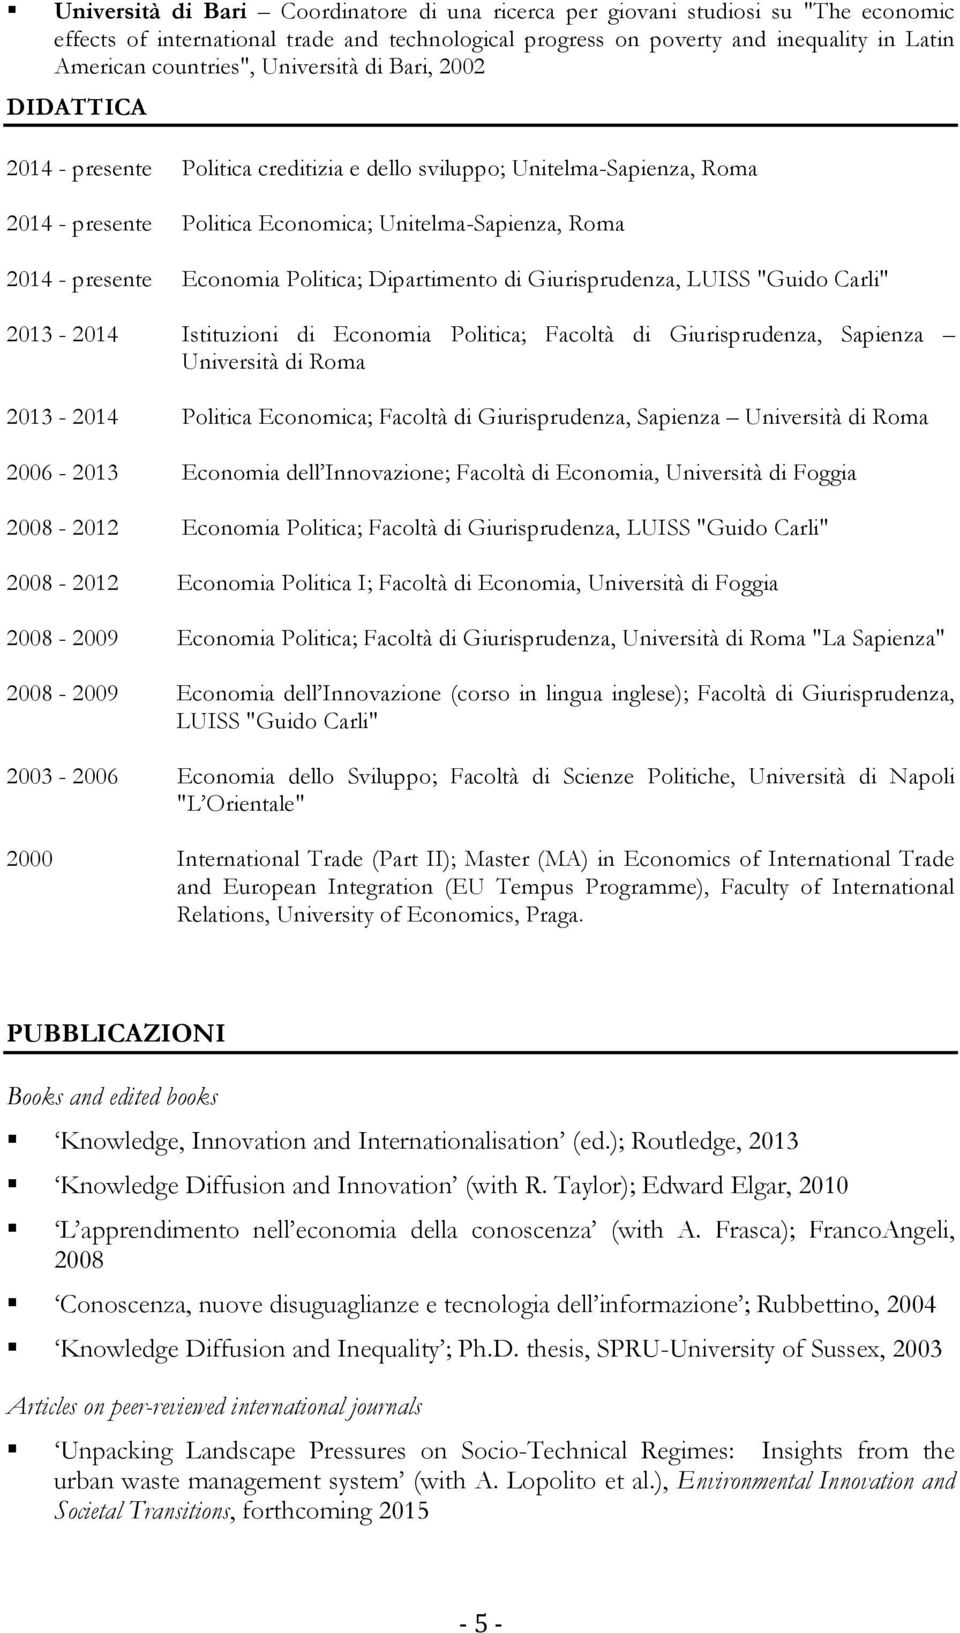 Politica; Dipartimento di Giurisprudenza, LUISS "Guido Carli" 2013-2014 Istituzioni di Economia Politica; Facoltà di Giurisprudenza, Sapienza Università di Roma 2013-2014 Politica Economica; Facoltà